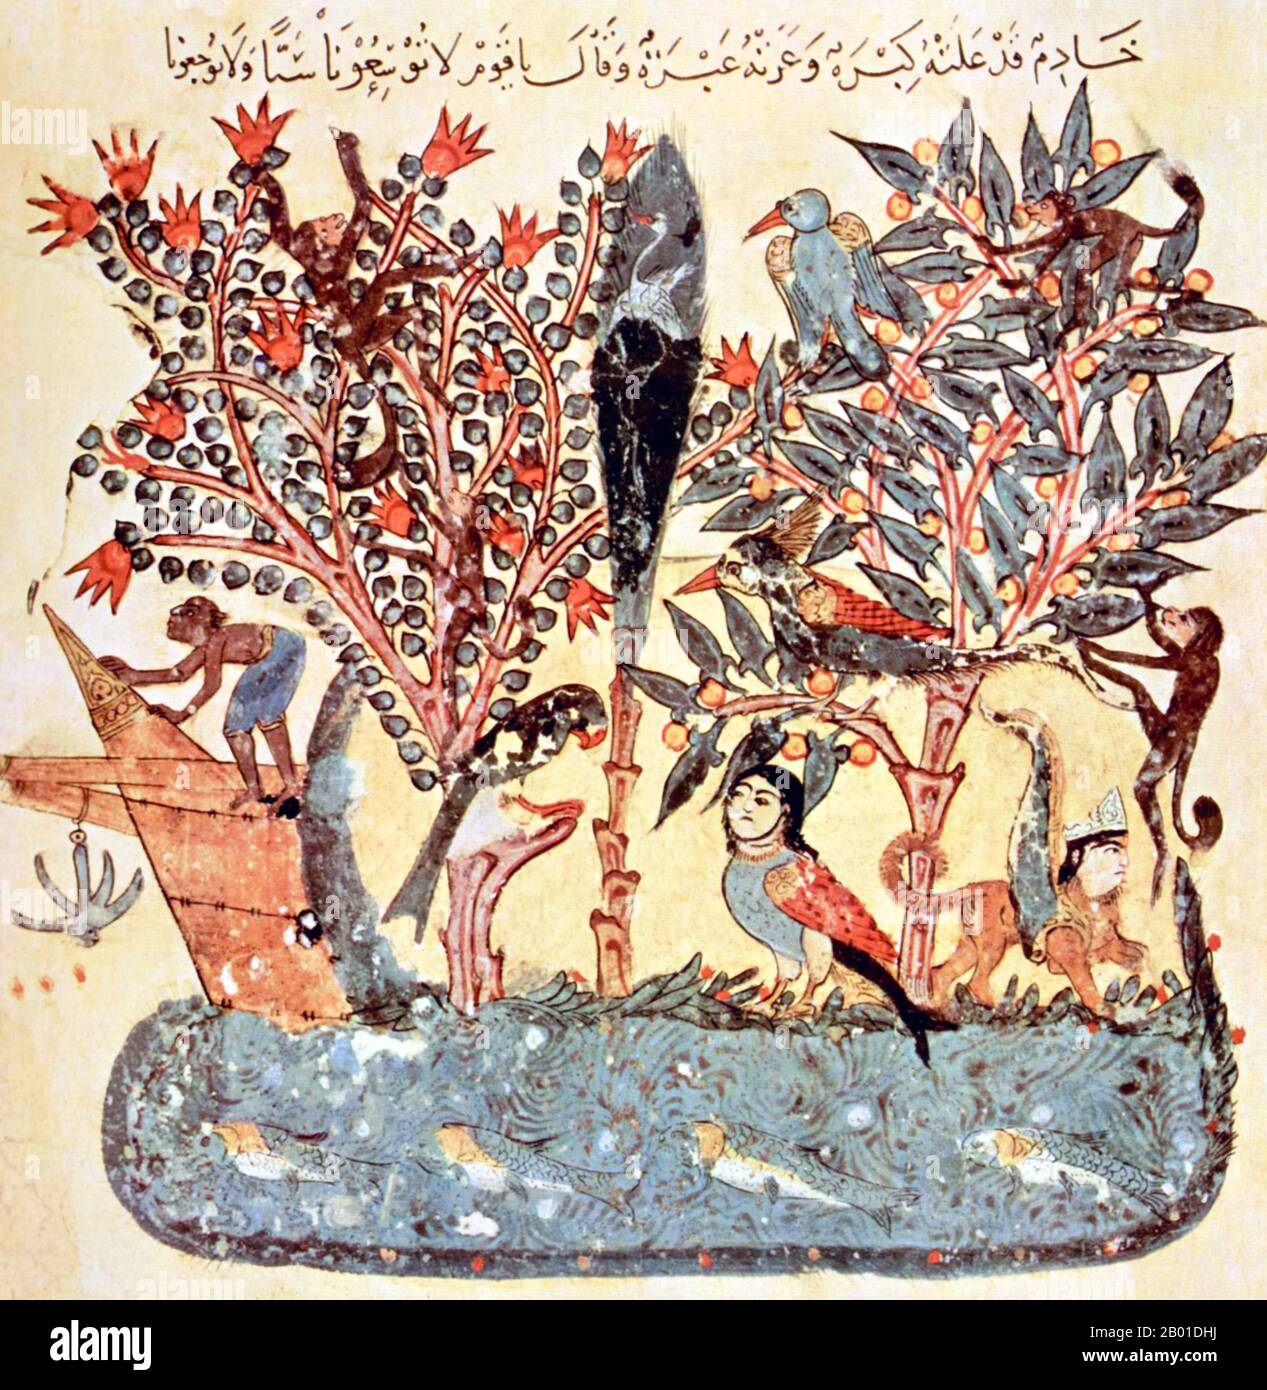 Iraq/Arabia: "L'isola orientale". Miniatura di Yahya ibn Mahmud al-Wasiti (13th ° secolo), 1237 CE. Yahyâ ibn Mahmûd al-Wâsitî è stato un artista arabo islamico del 13th° secolo. Al-Wasiti è nato a Wasit, nel sud dell'Iraq. Fu notato per le sue illustrazioni del Maqam di al-Hariri. Maqāma (letteralmente 'assemblee') sono un genere letterario arabo (originariamente) di prosa rima con intervalli di poesia in cui lo stravagamento retorico è cospicuo. Si dice che l'autore del 10th° secolo Badī' al-Zaman al-Hamadhāni abbia inventato la forma, che fu estesa da al-Hariri di Bassora nel secolo successivo. Foto Stock